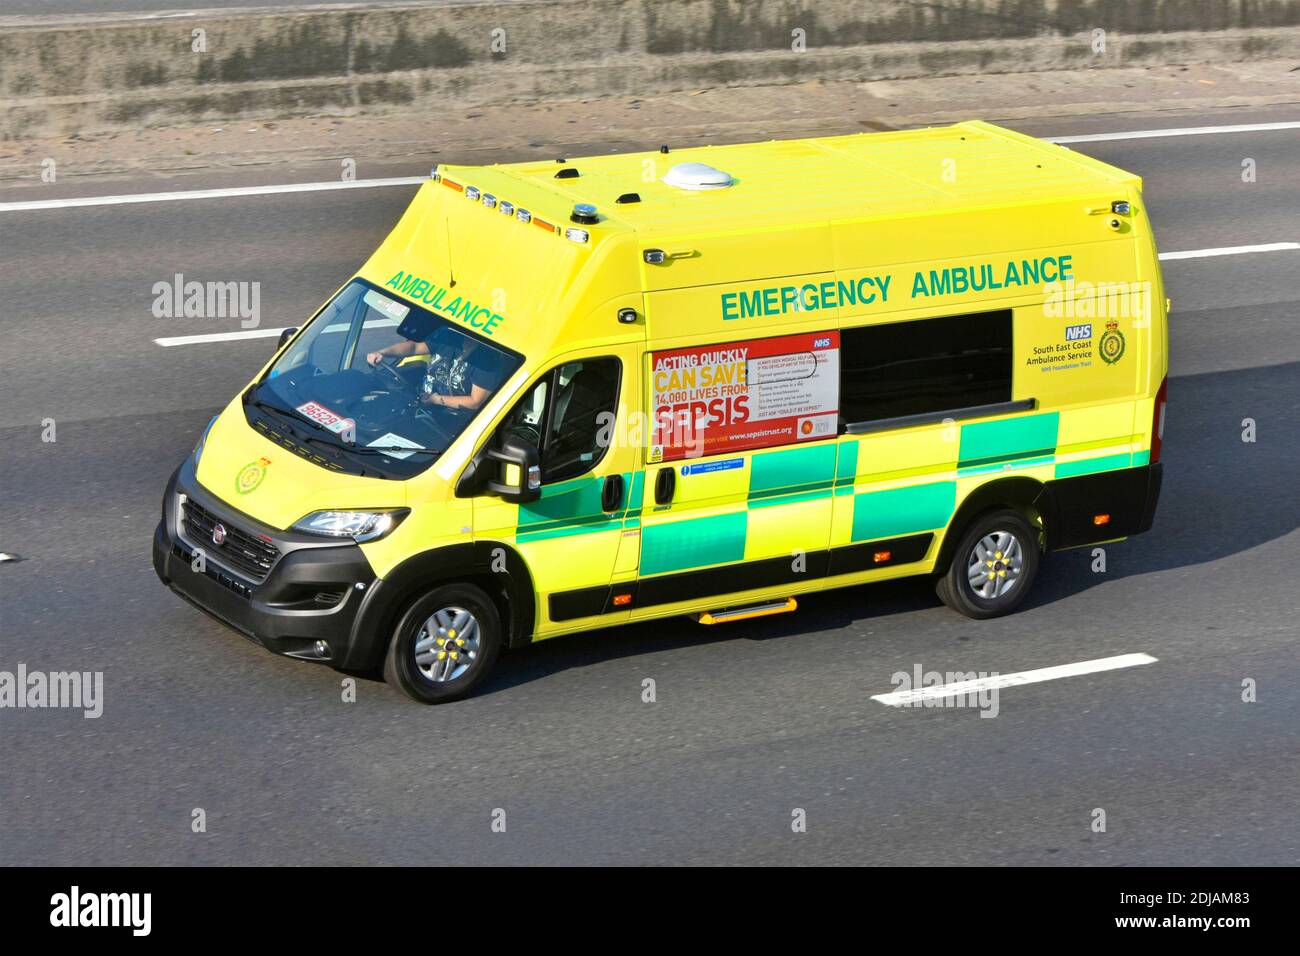 South East Coast NHS National Health Service ambulanza di emergenza con Sepsis informazioni pubblicità Fiat veicolo che guida su targhe commerciali su autostrada del Regno Unito Foto Stock